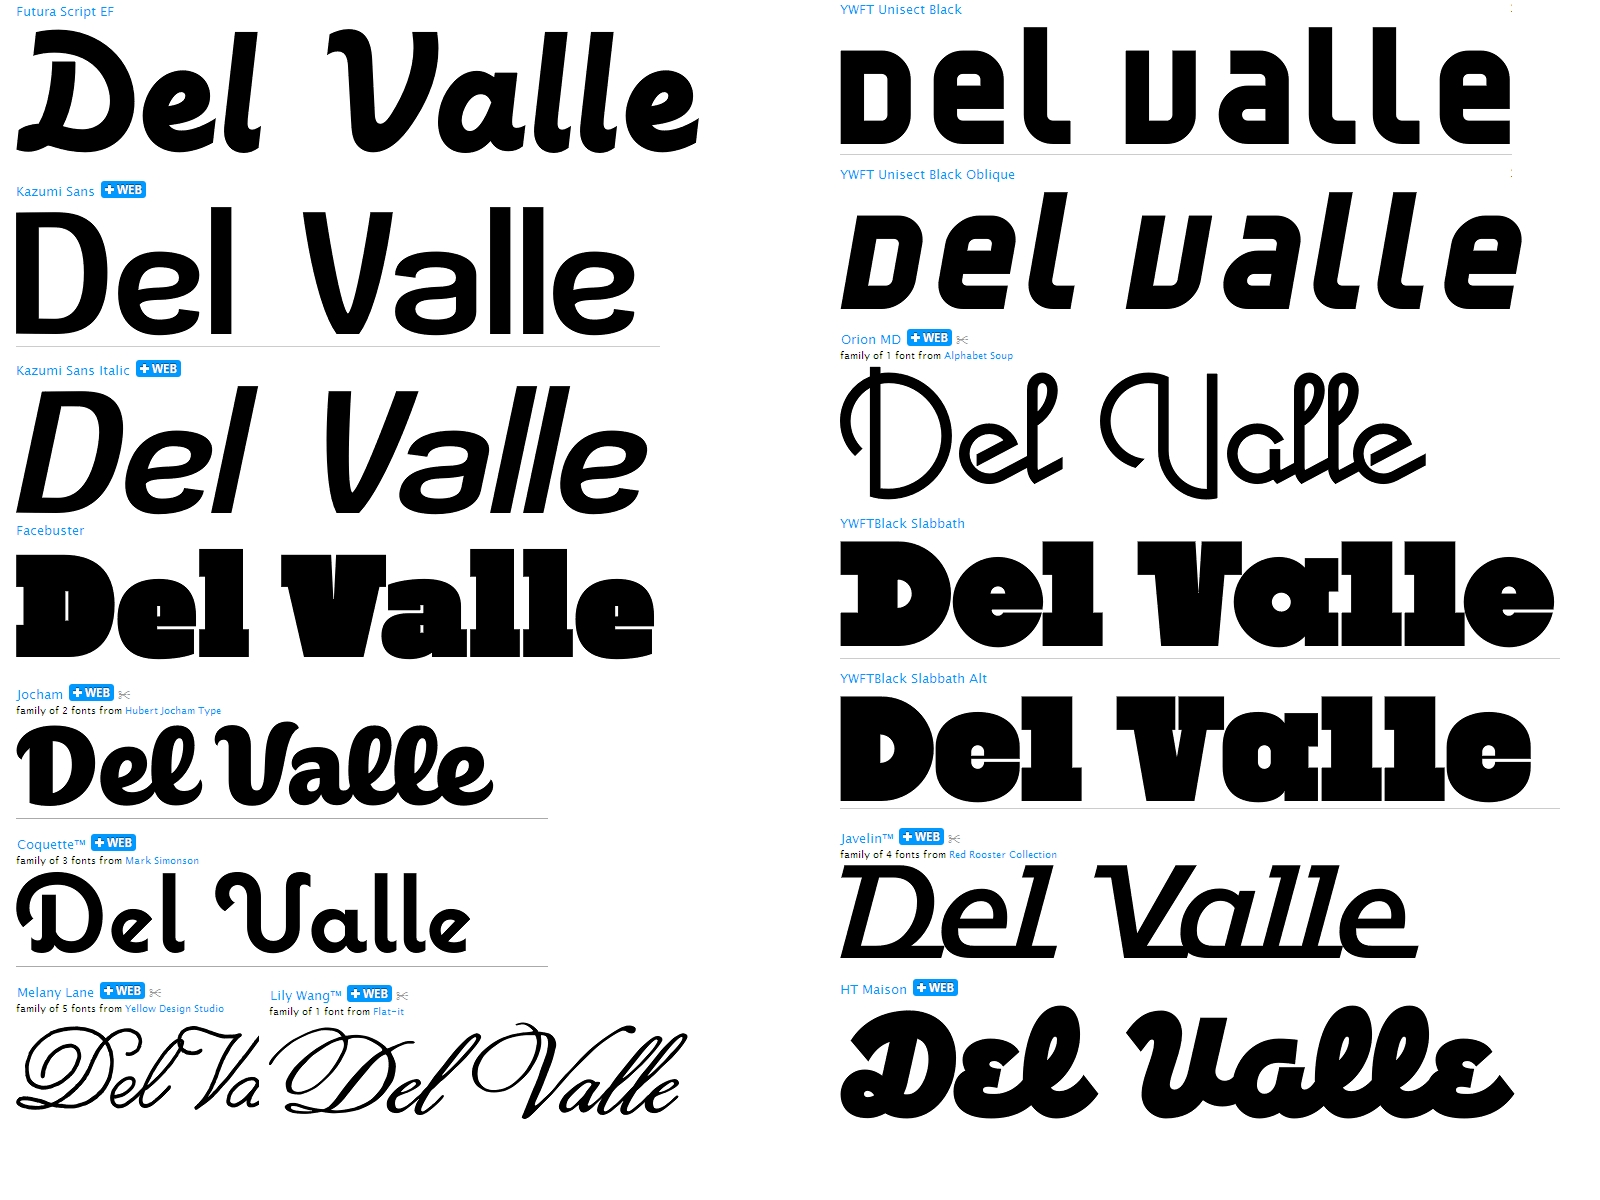 DEL VALLE, un homenaje a don Samuel del Valle Del%2520valle%2520presentacion